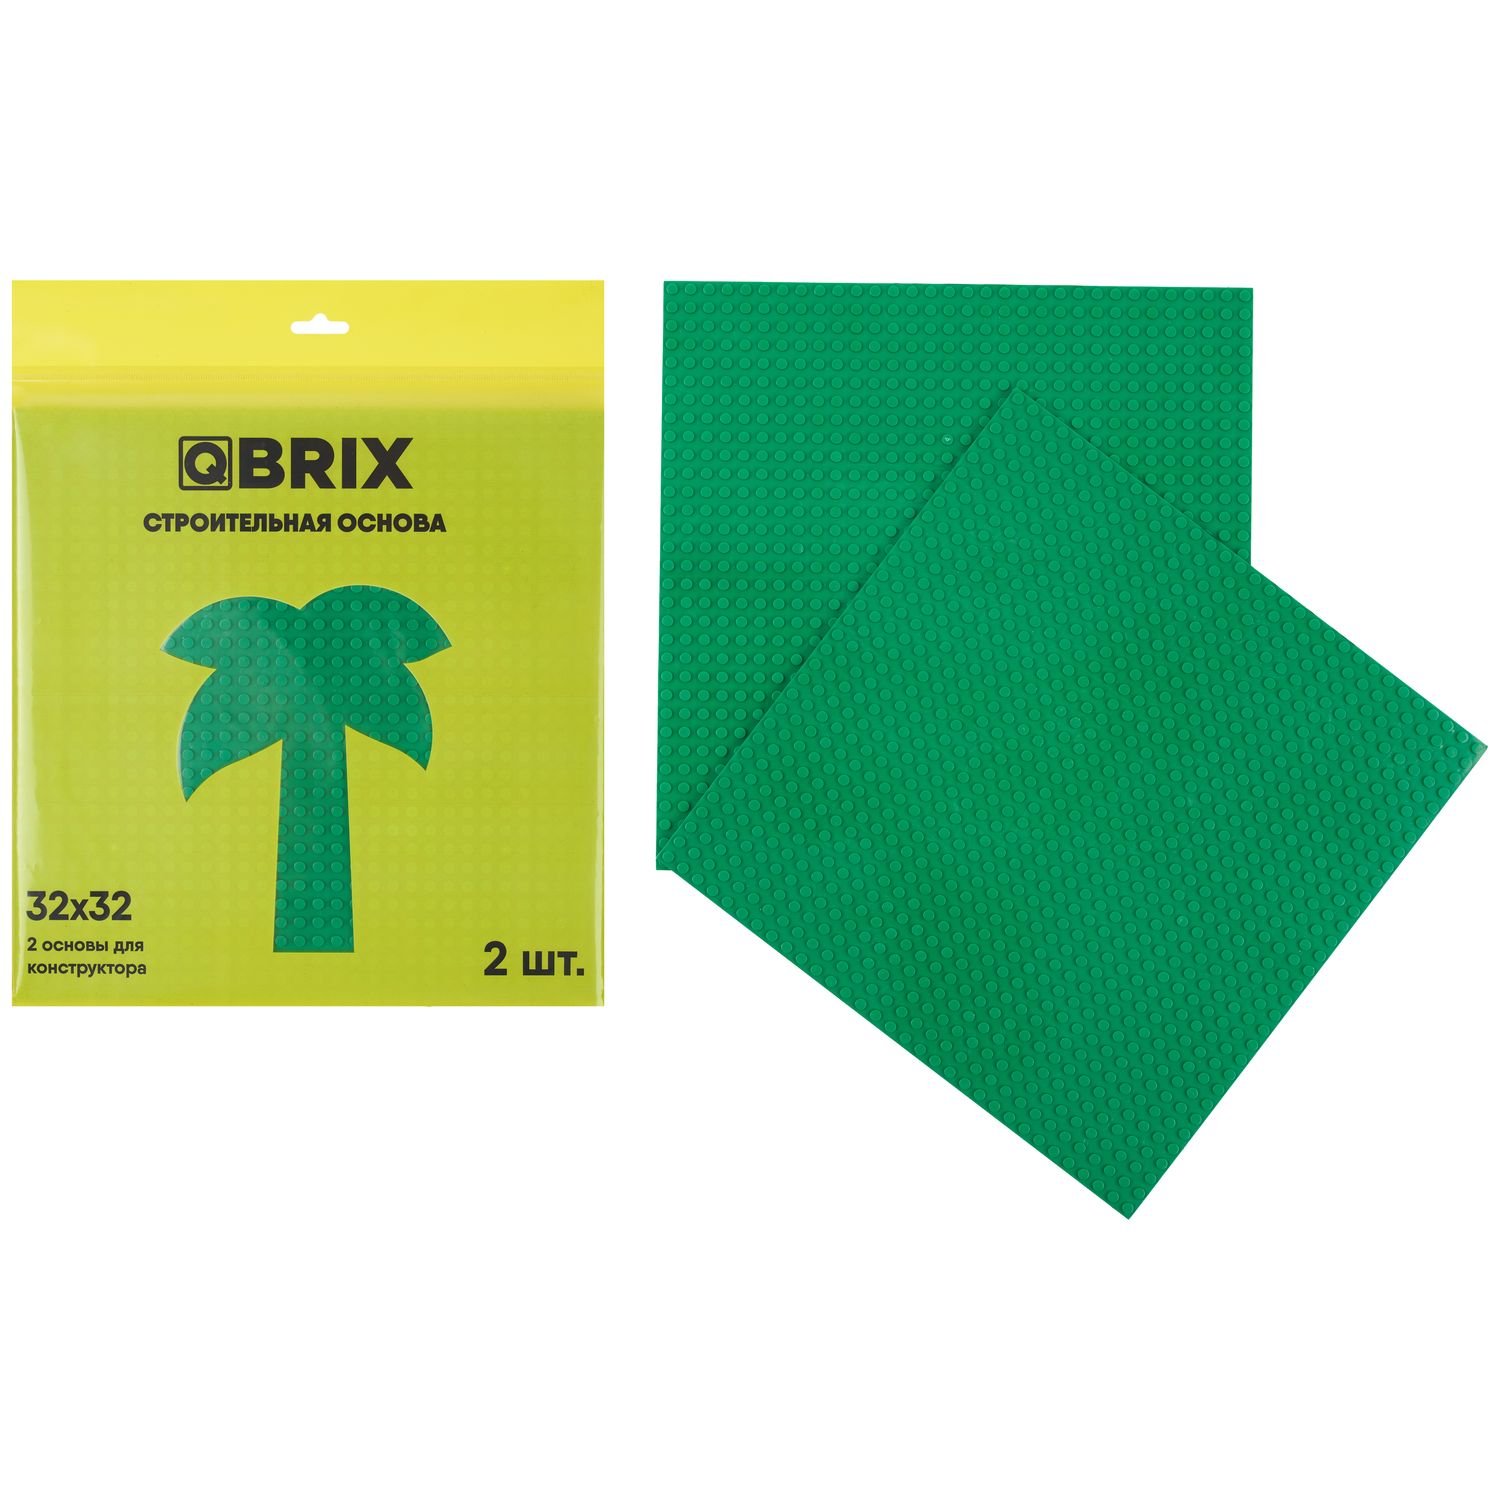 Строительная пластина QBRIX (набор из 2-х штук), цвет: зелёный QBRIX10001 строительная пластина lego большие строительные платы